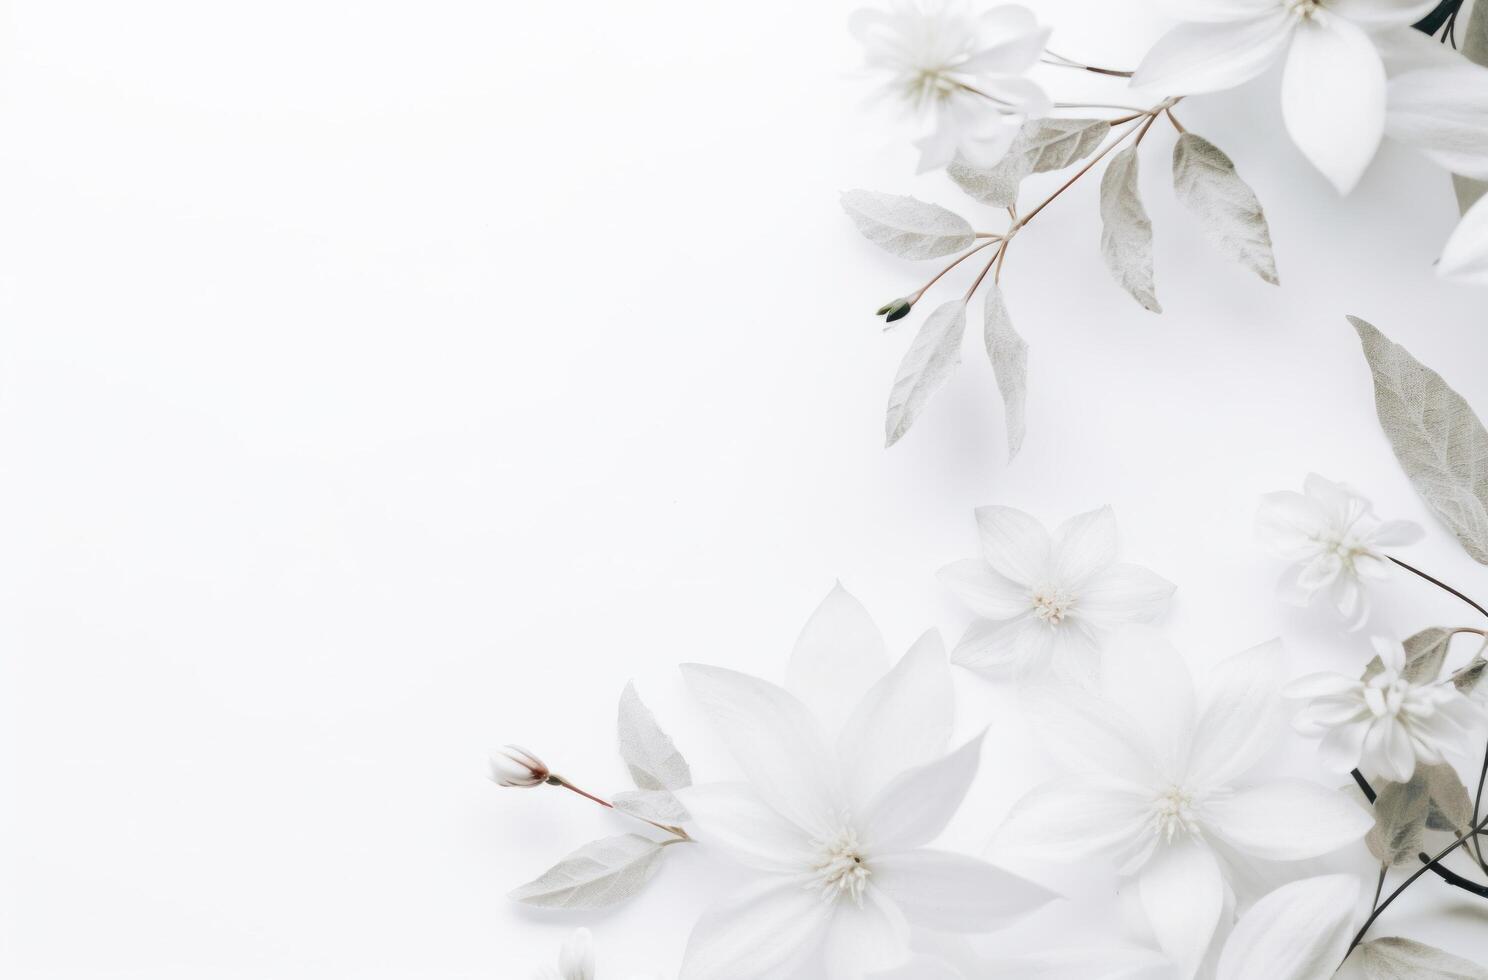 ai gerado branco folhas e flores em uma branco fundo foto